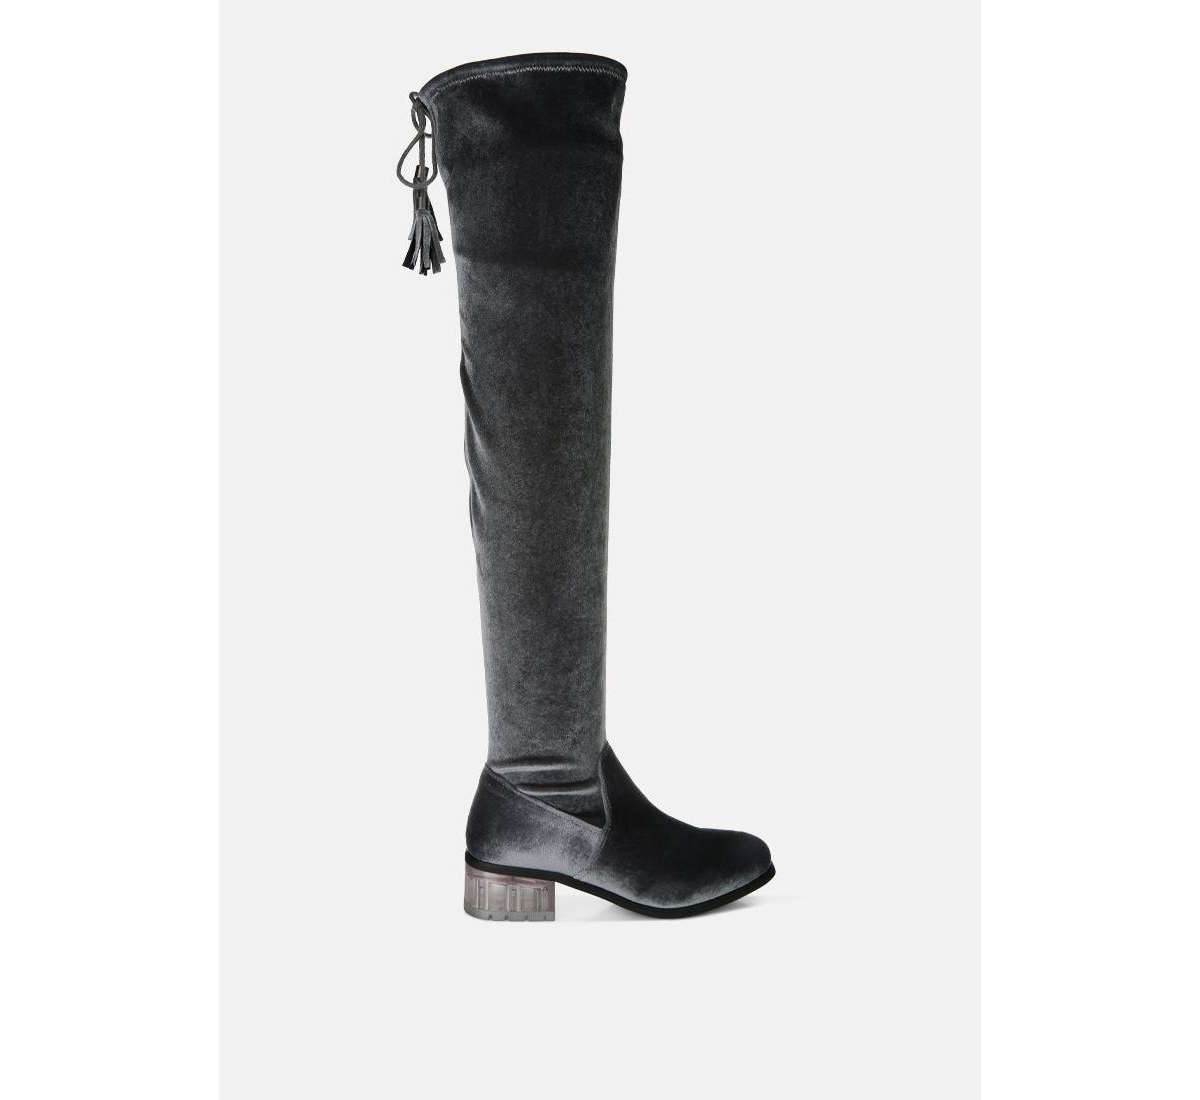 rumple velvet over the knee clear heel boots - Grey